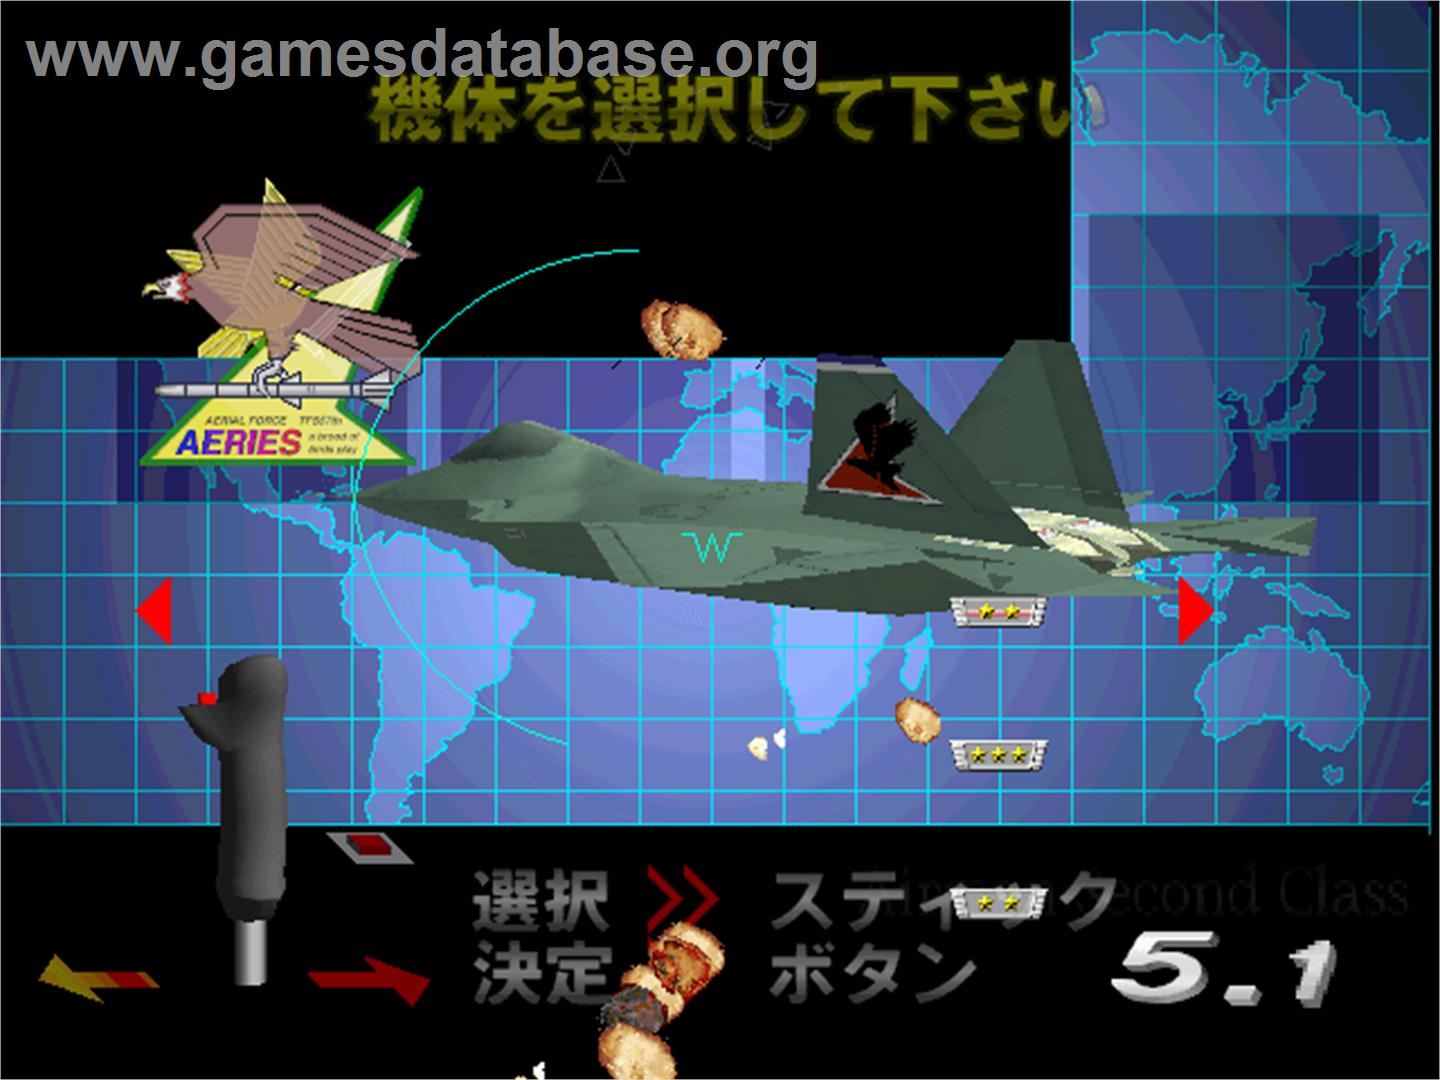 Air Combat 22 - Arcade - Artwork - Select Screen